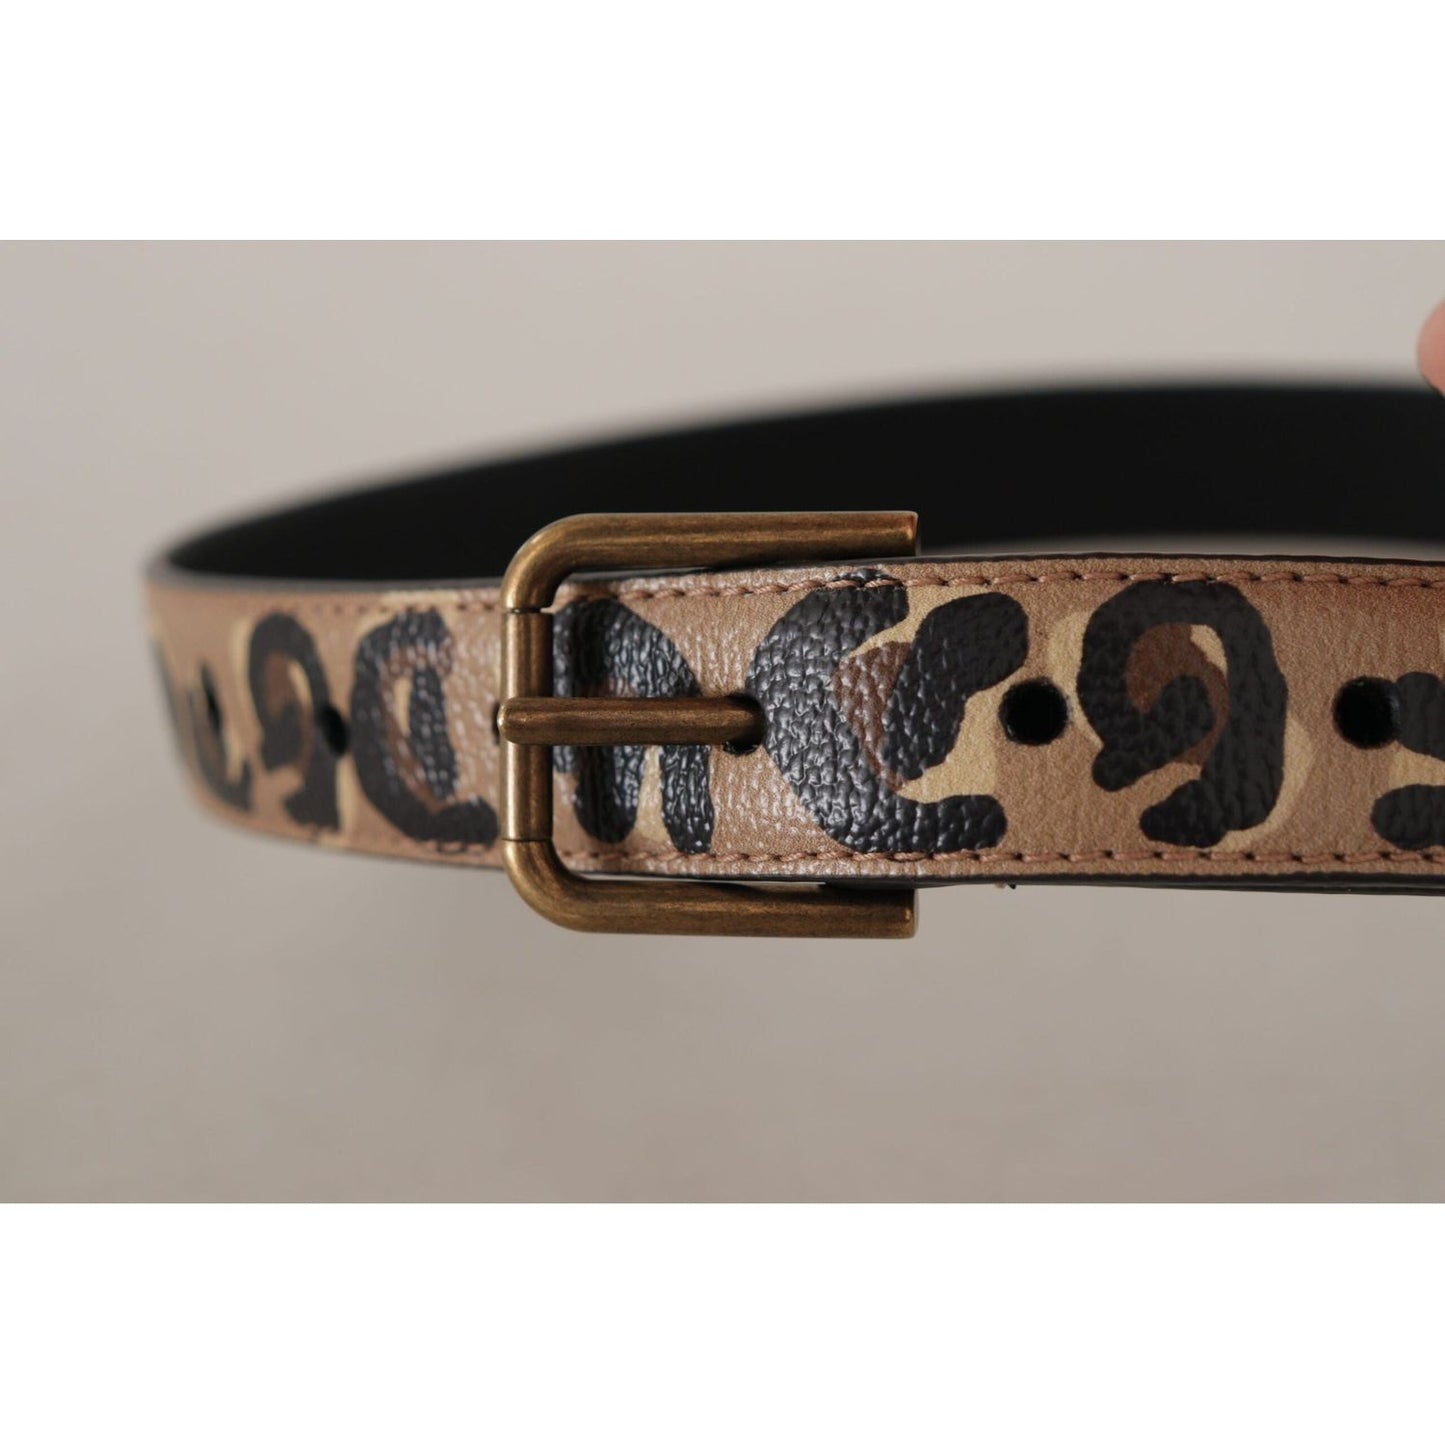 Dolce & Gabbana Elegant Leather Engraved Buckle Belt brown-leopard-print-vintage-metal-waist-buckle-belt